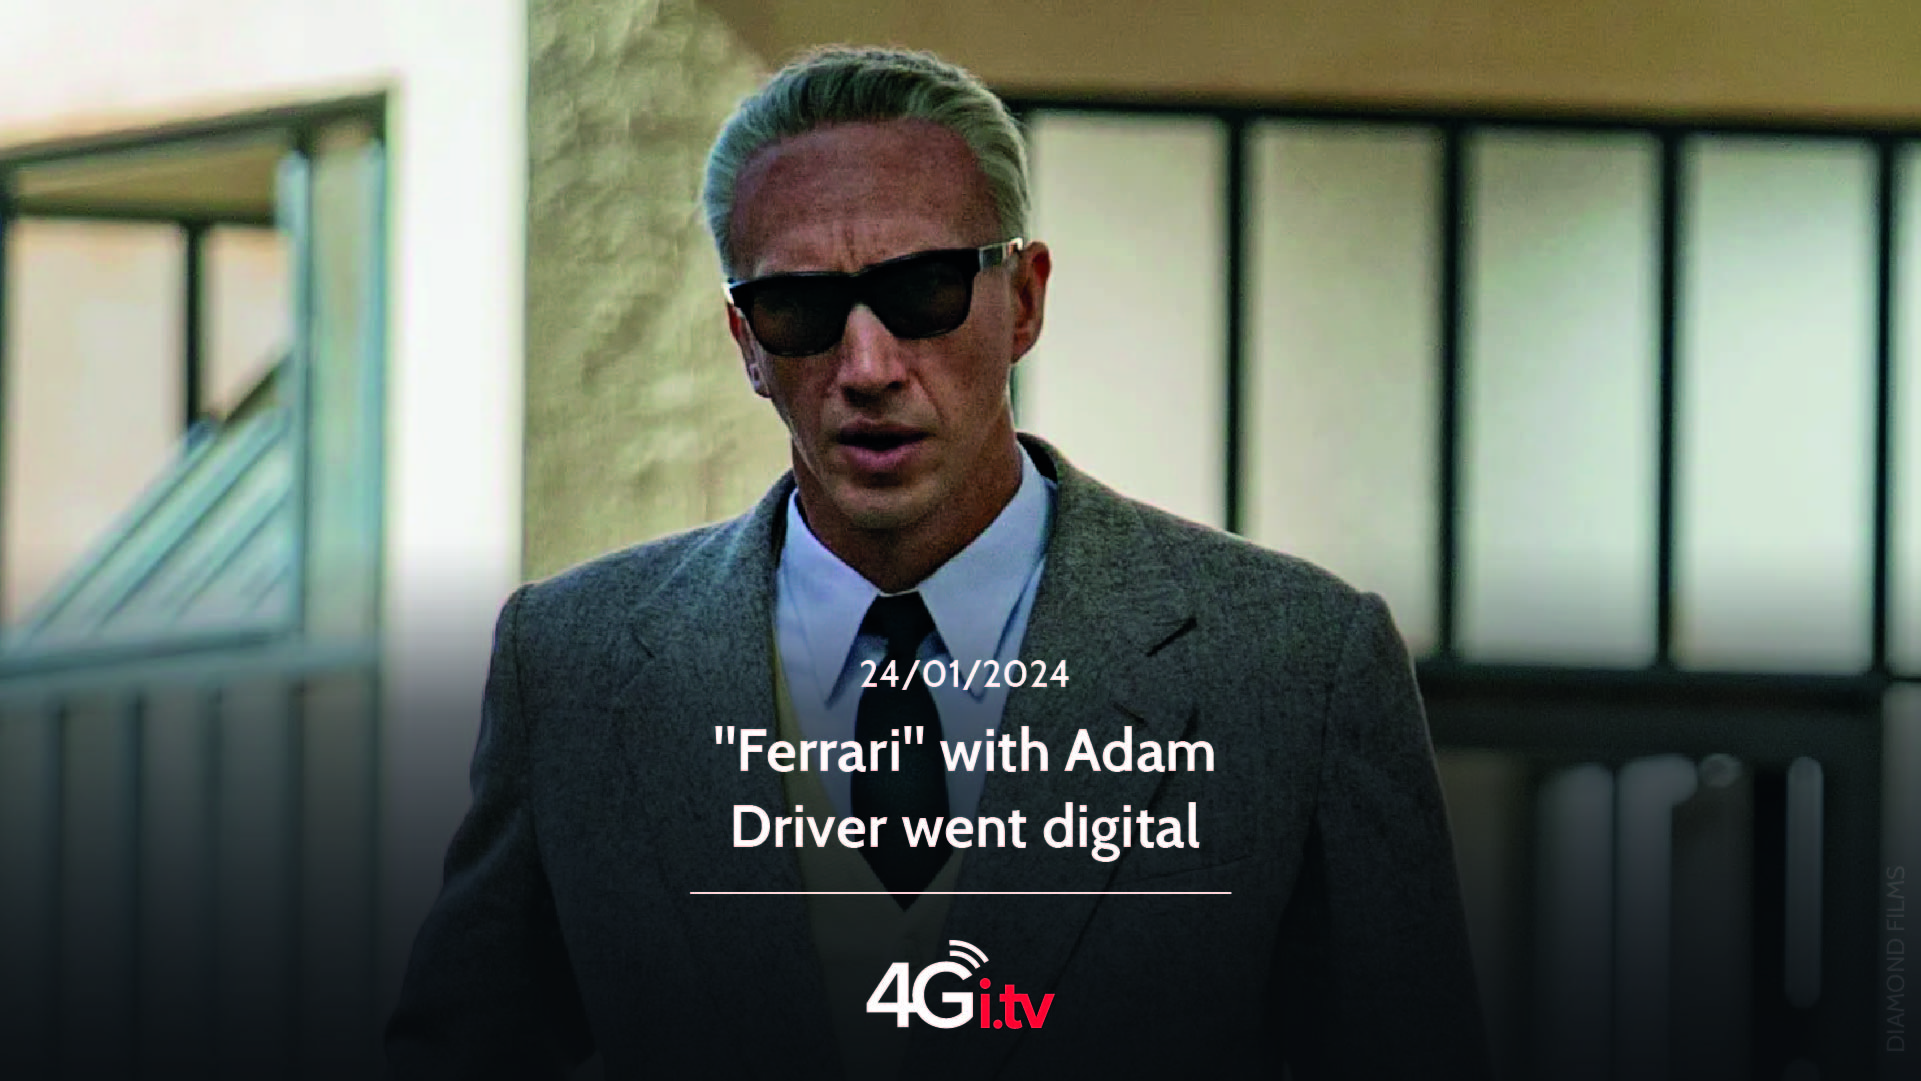 Подробнее о статье “Ferrari” with Adam Driver went digital